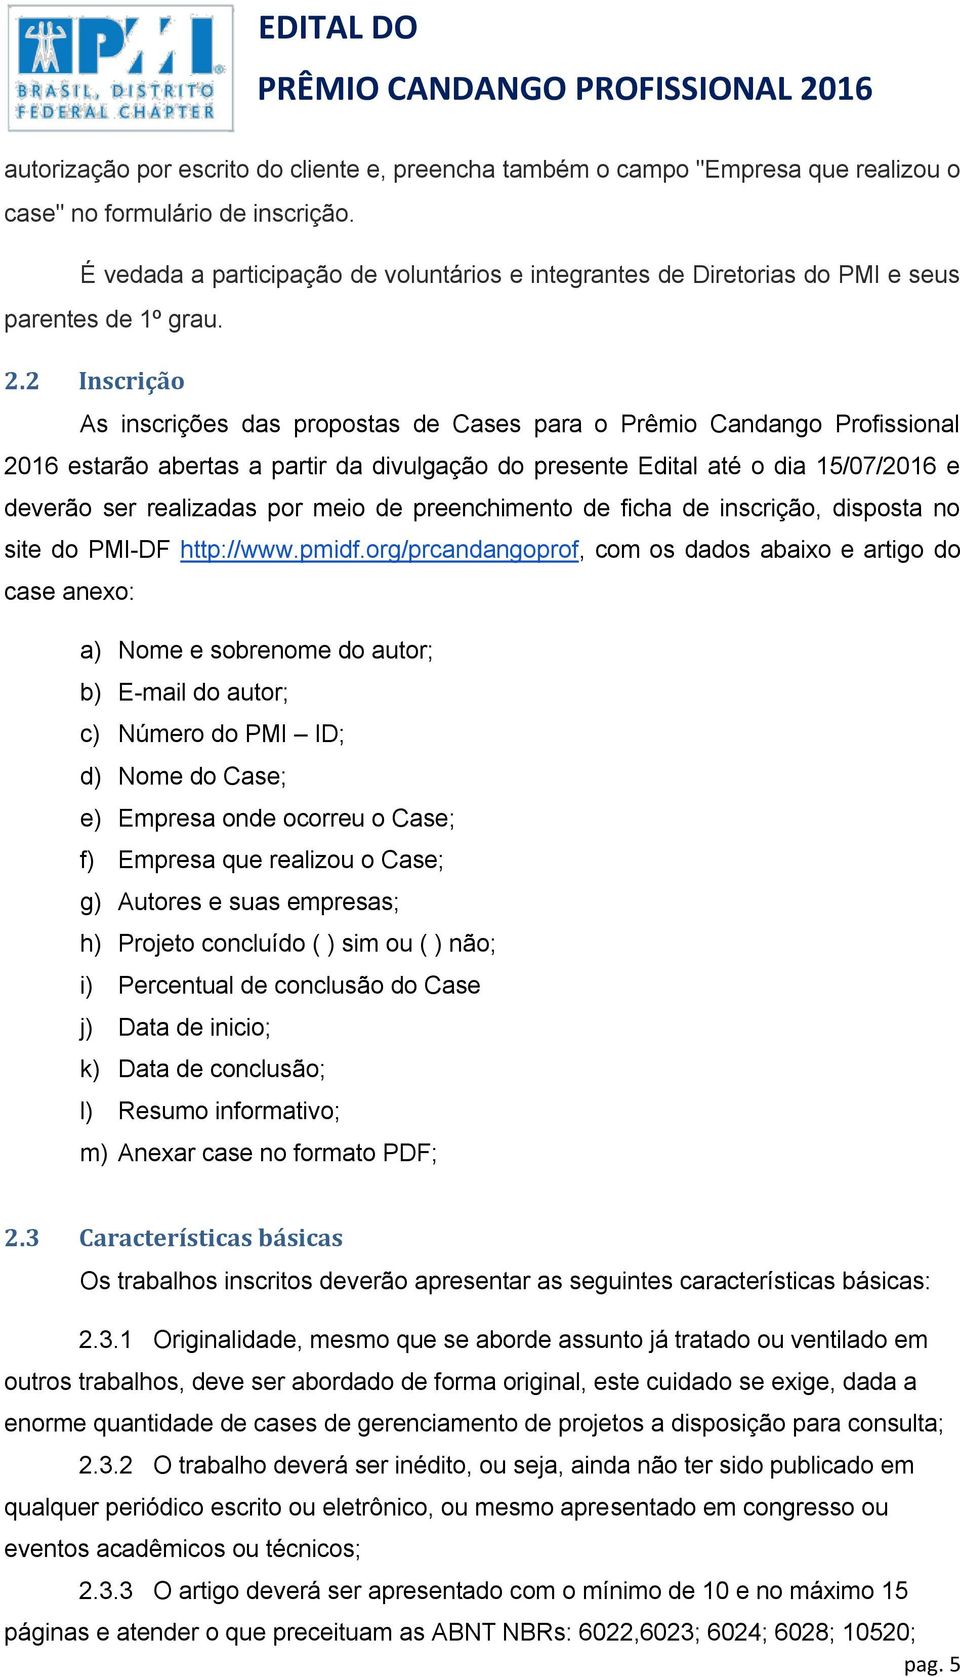 2 Inscrição As inscrições das propostas de Cases para o Prêmio Candango Profissional 2016 estarão abertas a partir da divulgação do presente Edital até o dia 15/07/2016 e deverão ser realizadas por